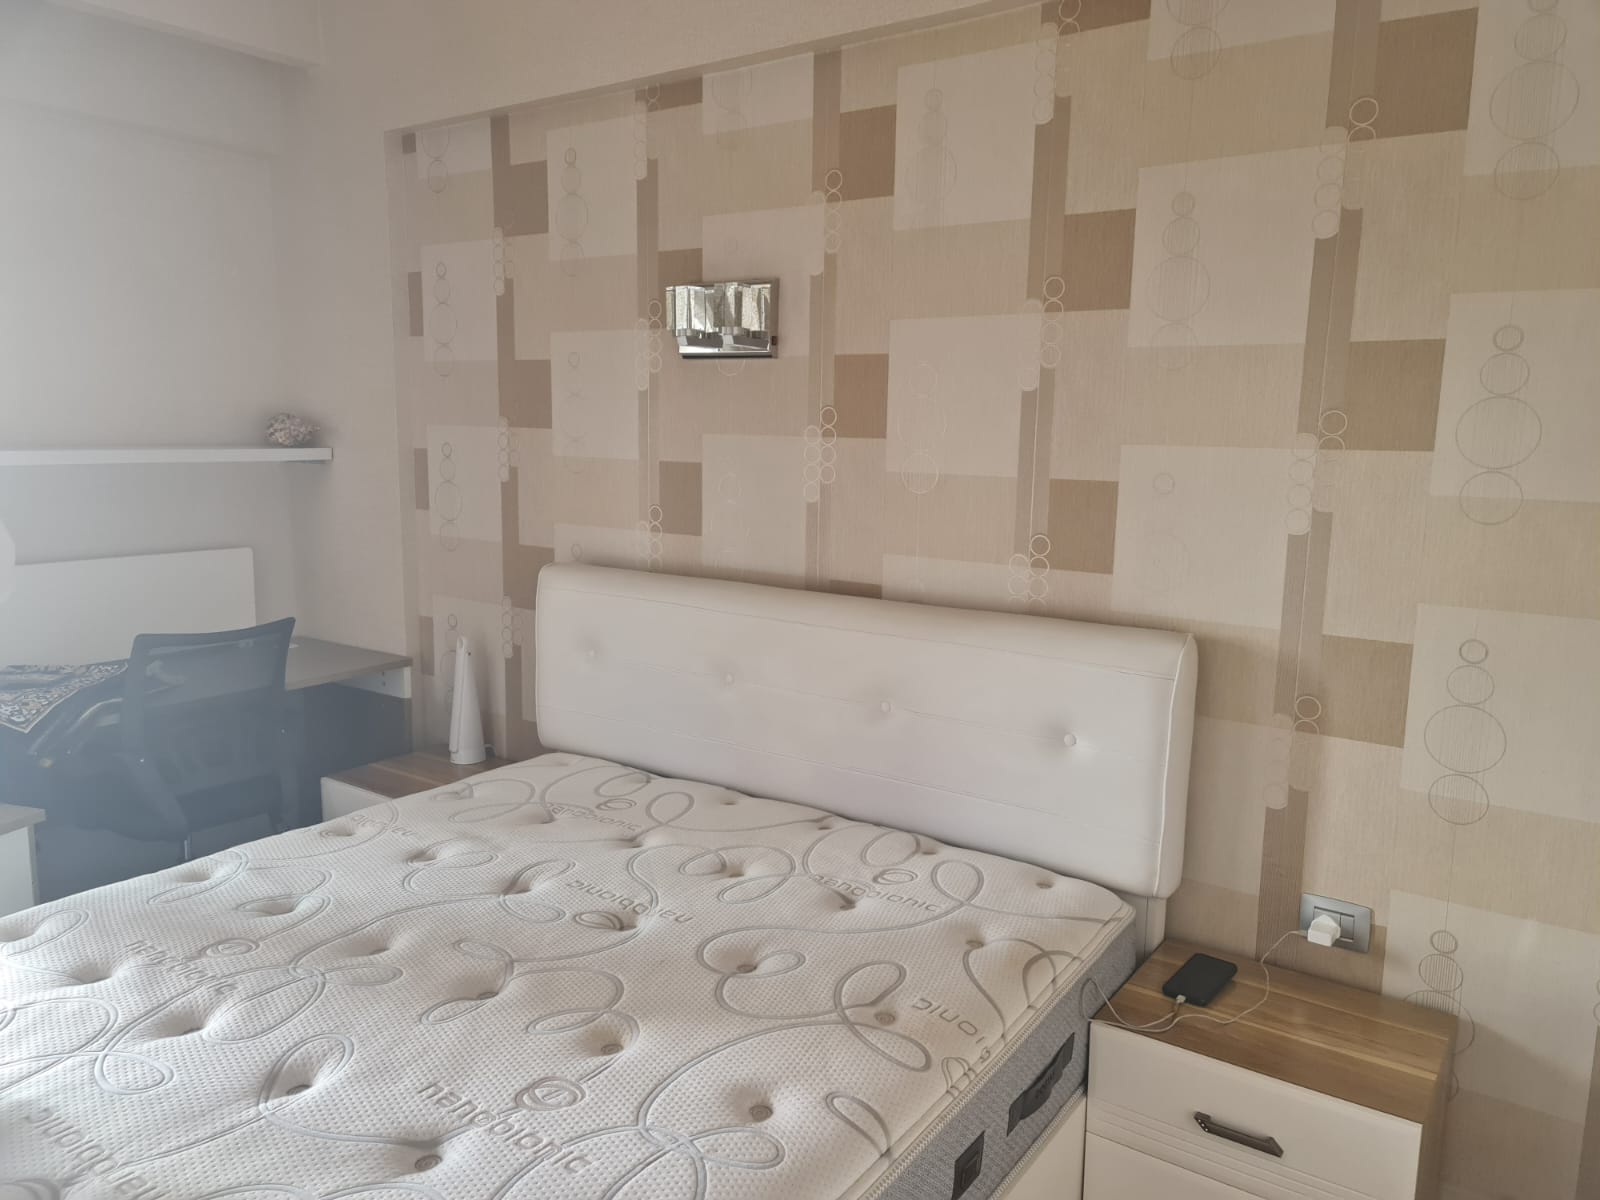 3 Bedroom all en-suite tastefully furnished apartment in kileleshwa to let at Kshs300k (8)